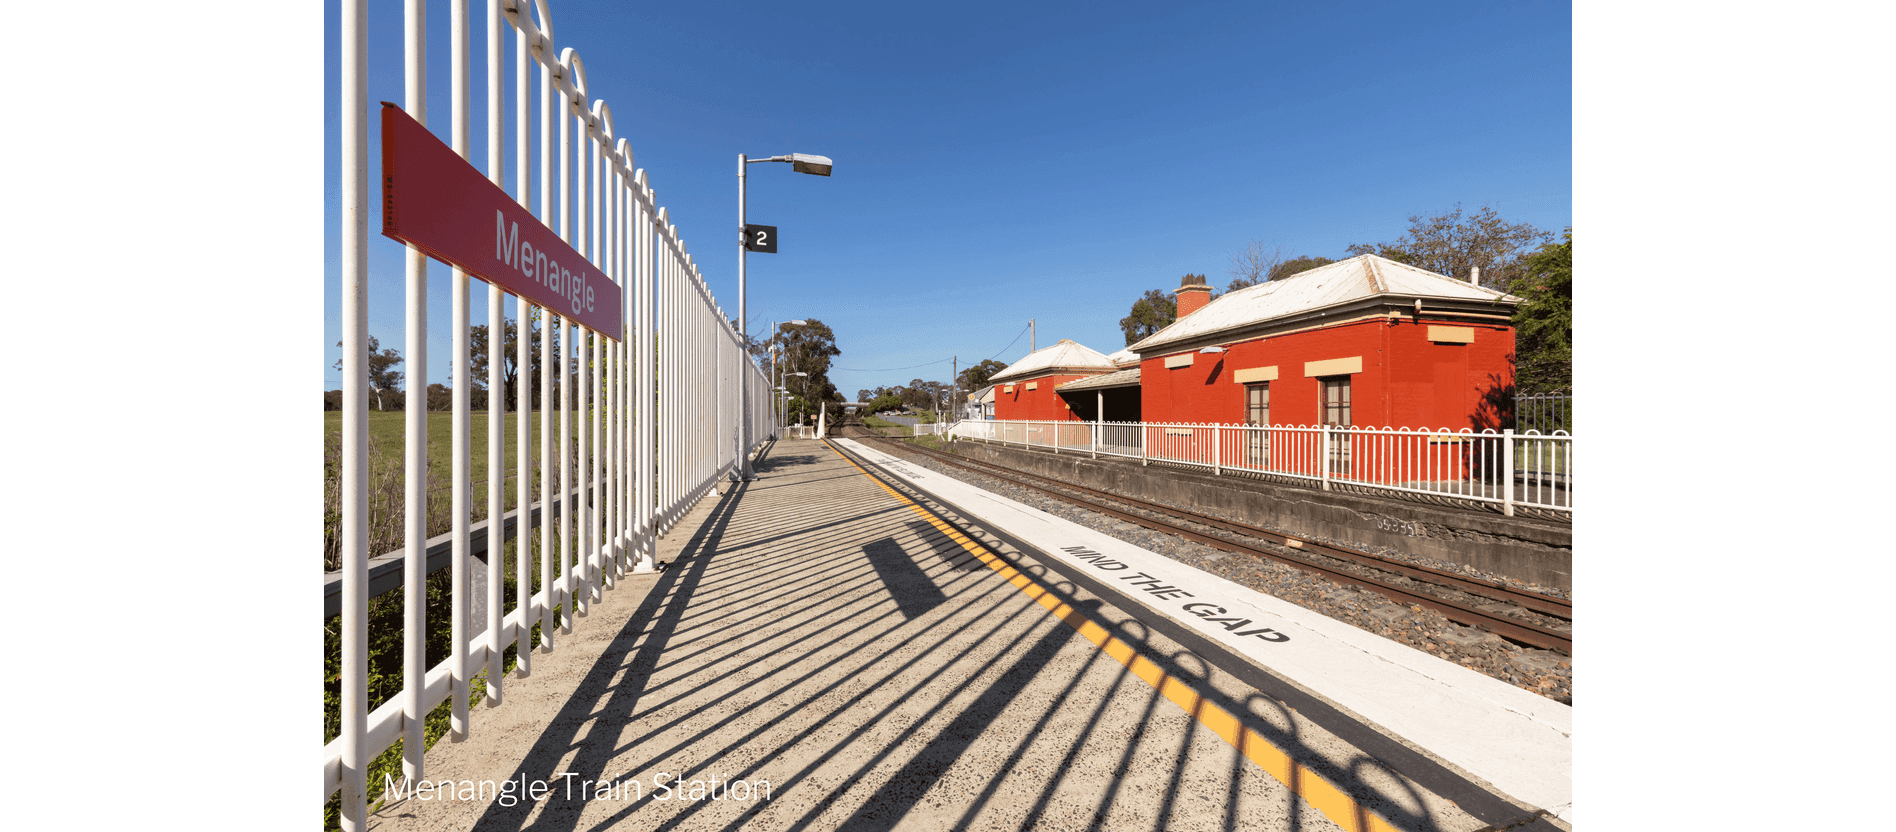 Rackwool Street, Menangle, NSW 2568